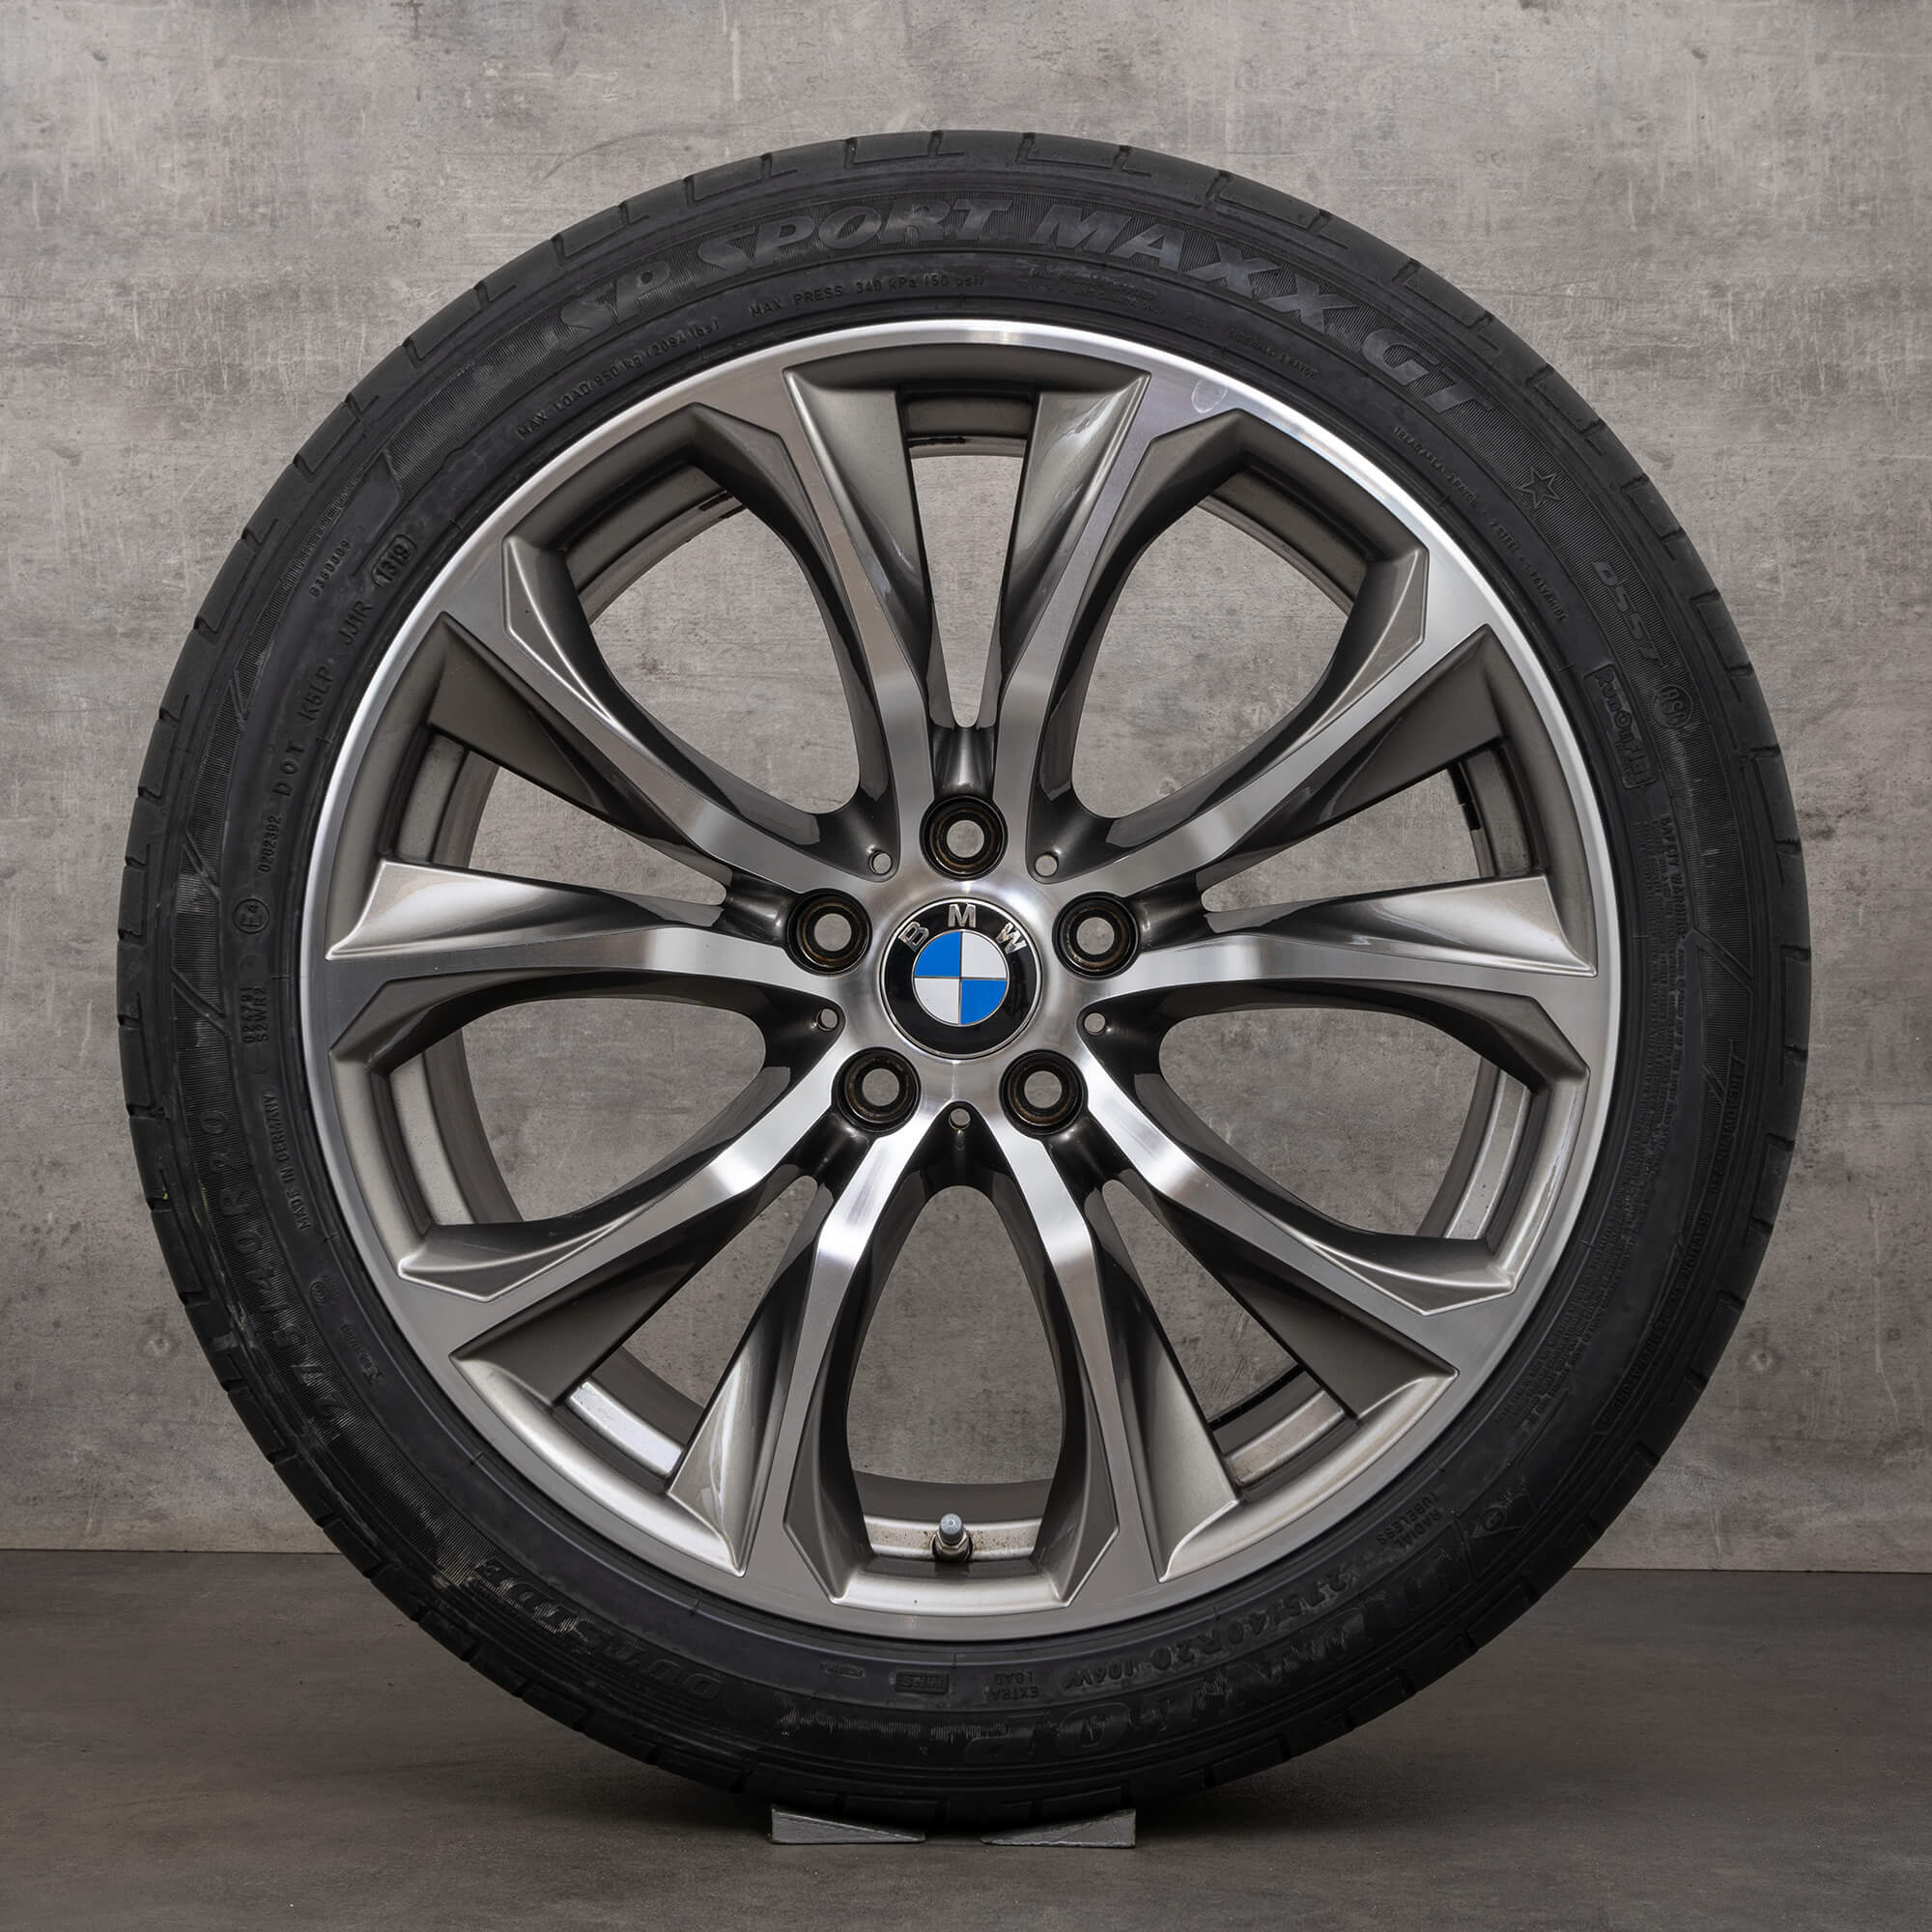 Cerchi in alluminio BMW da 20 pollici X5 F15 E70 X6 F16 cerchi estivi pneumatici